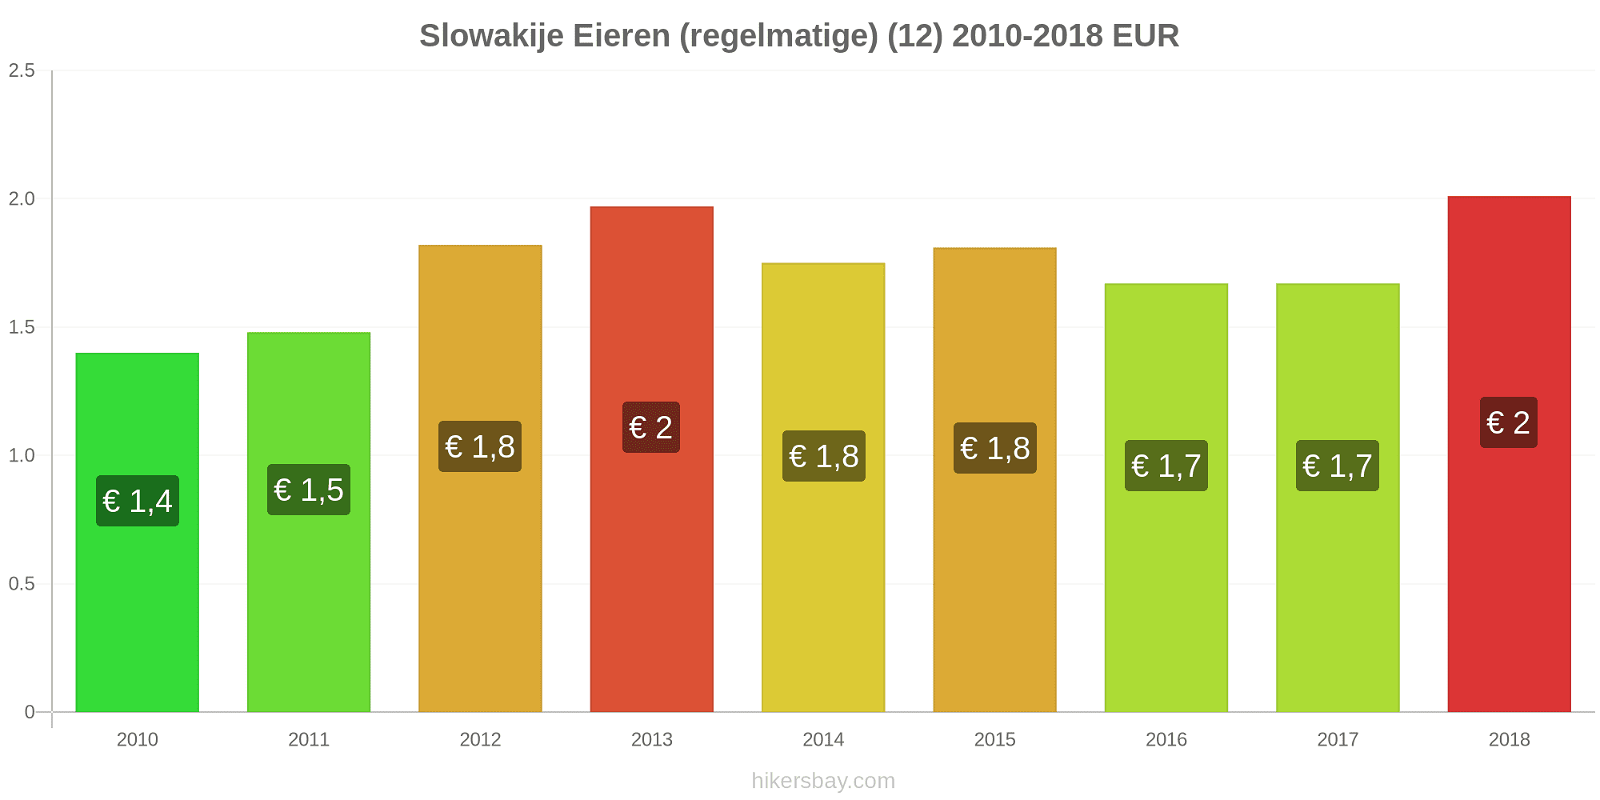 Slowakije prijswijzigingen Eieren (regelmatig) (12) hikersbay.com